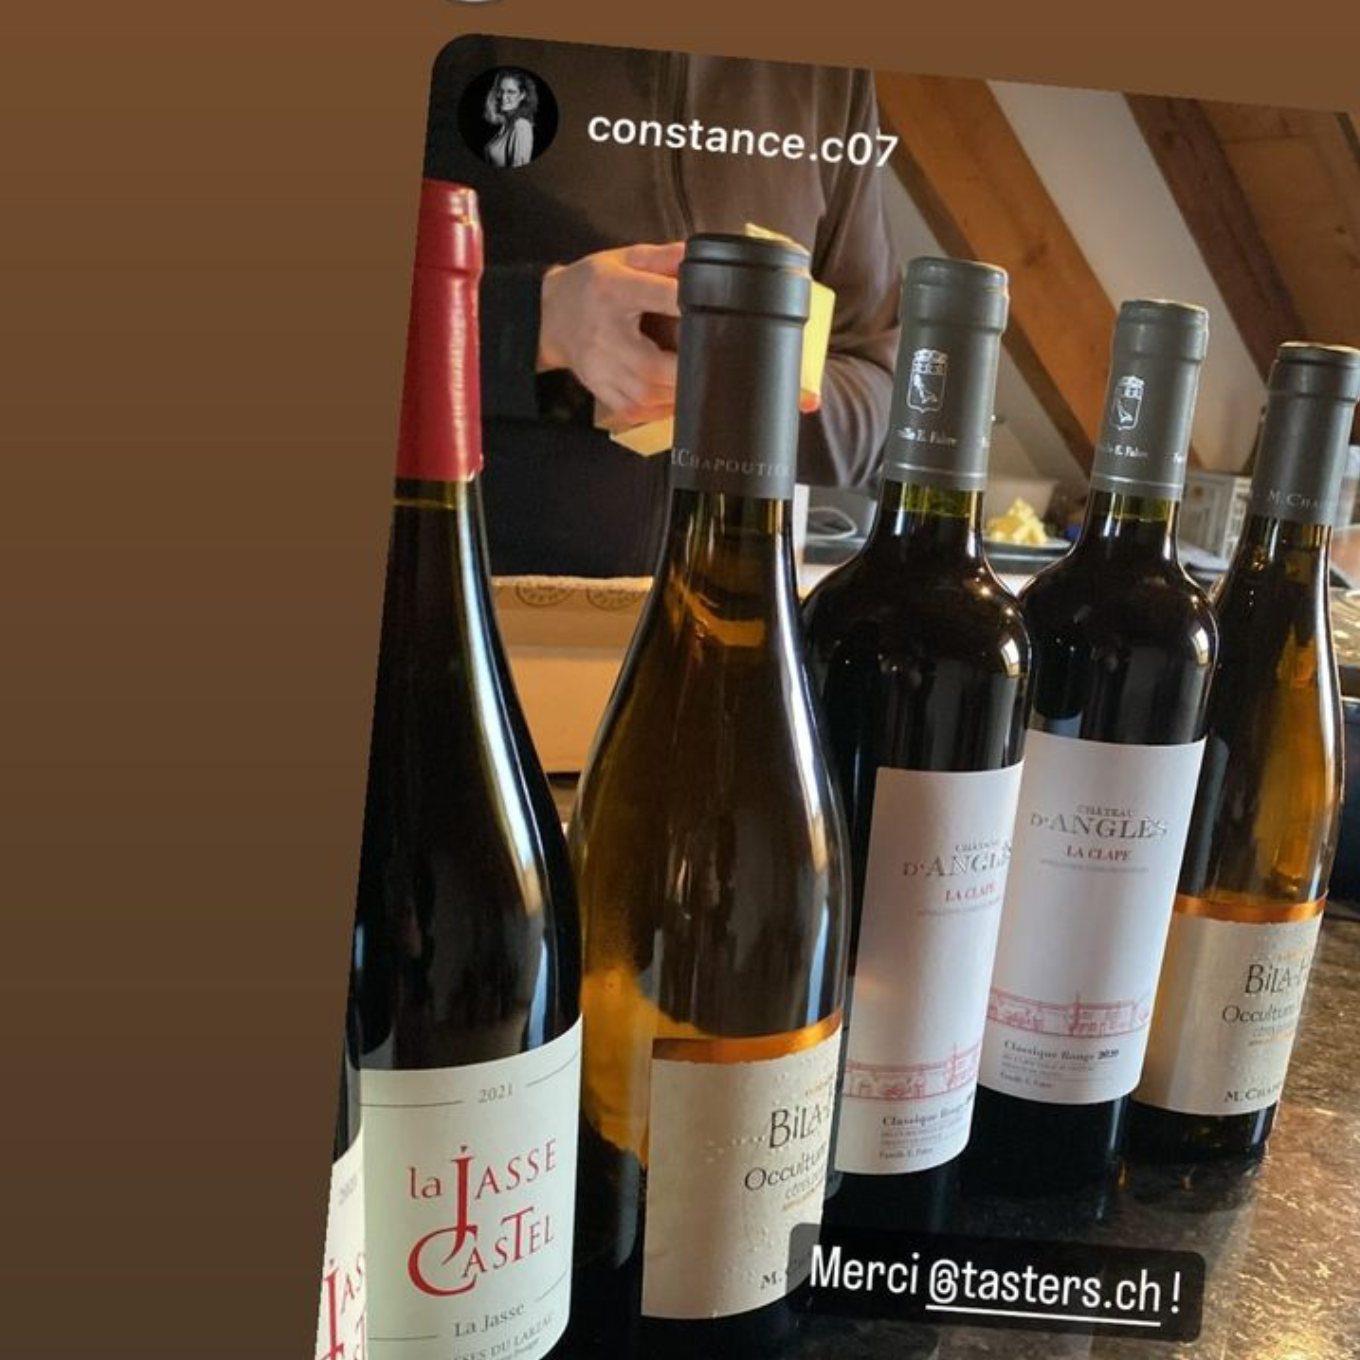 Constance partage la réception de son étape consacrée aux vins du Languedoc-Roussillon sur Instagram.